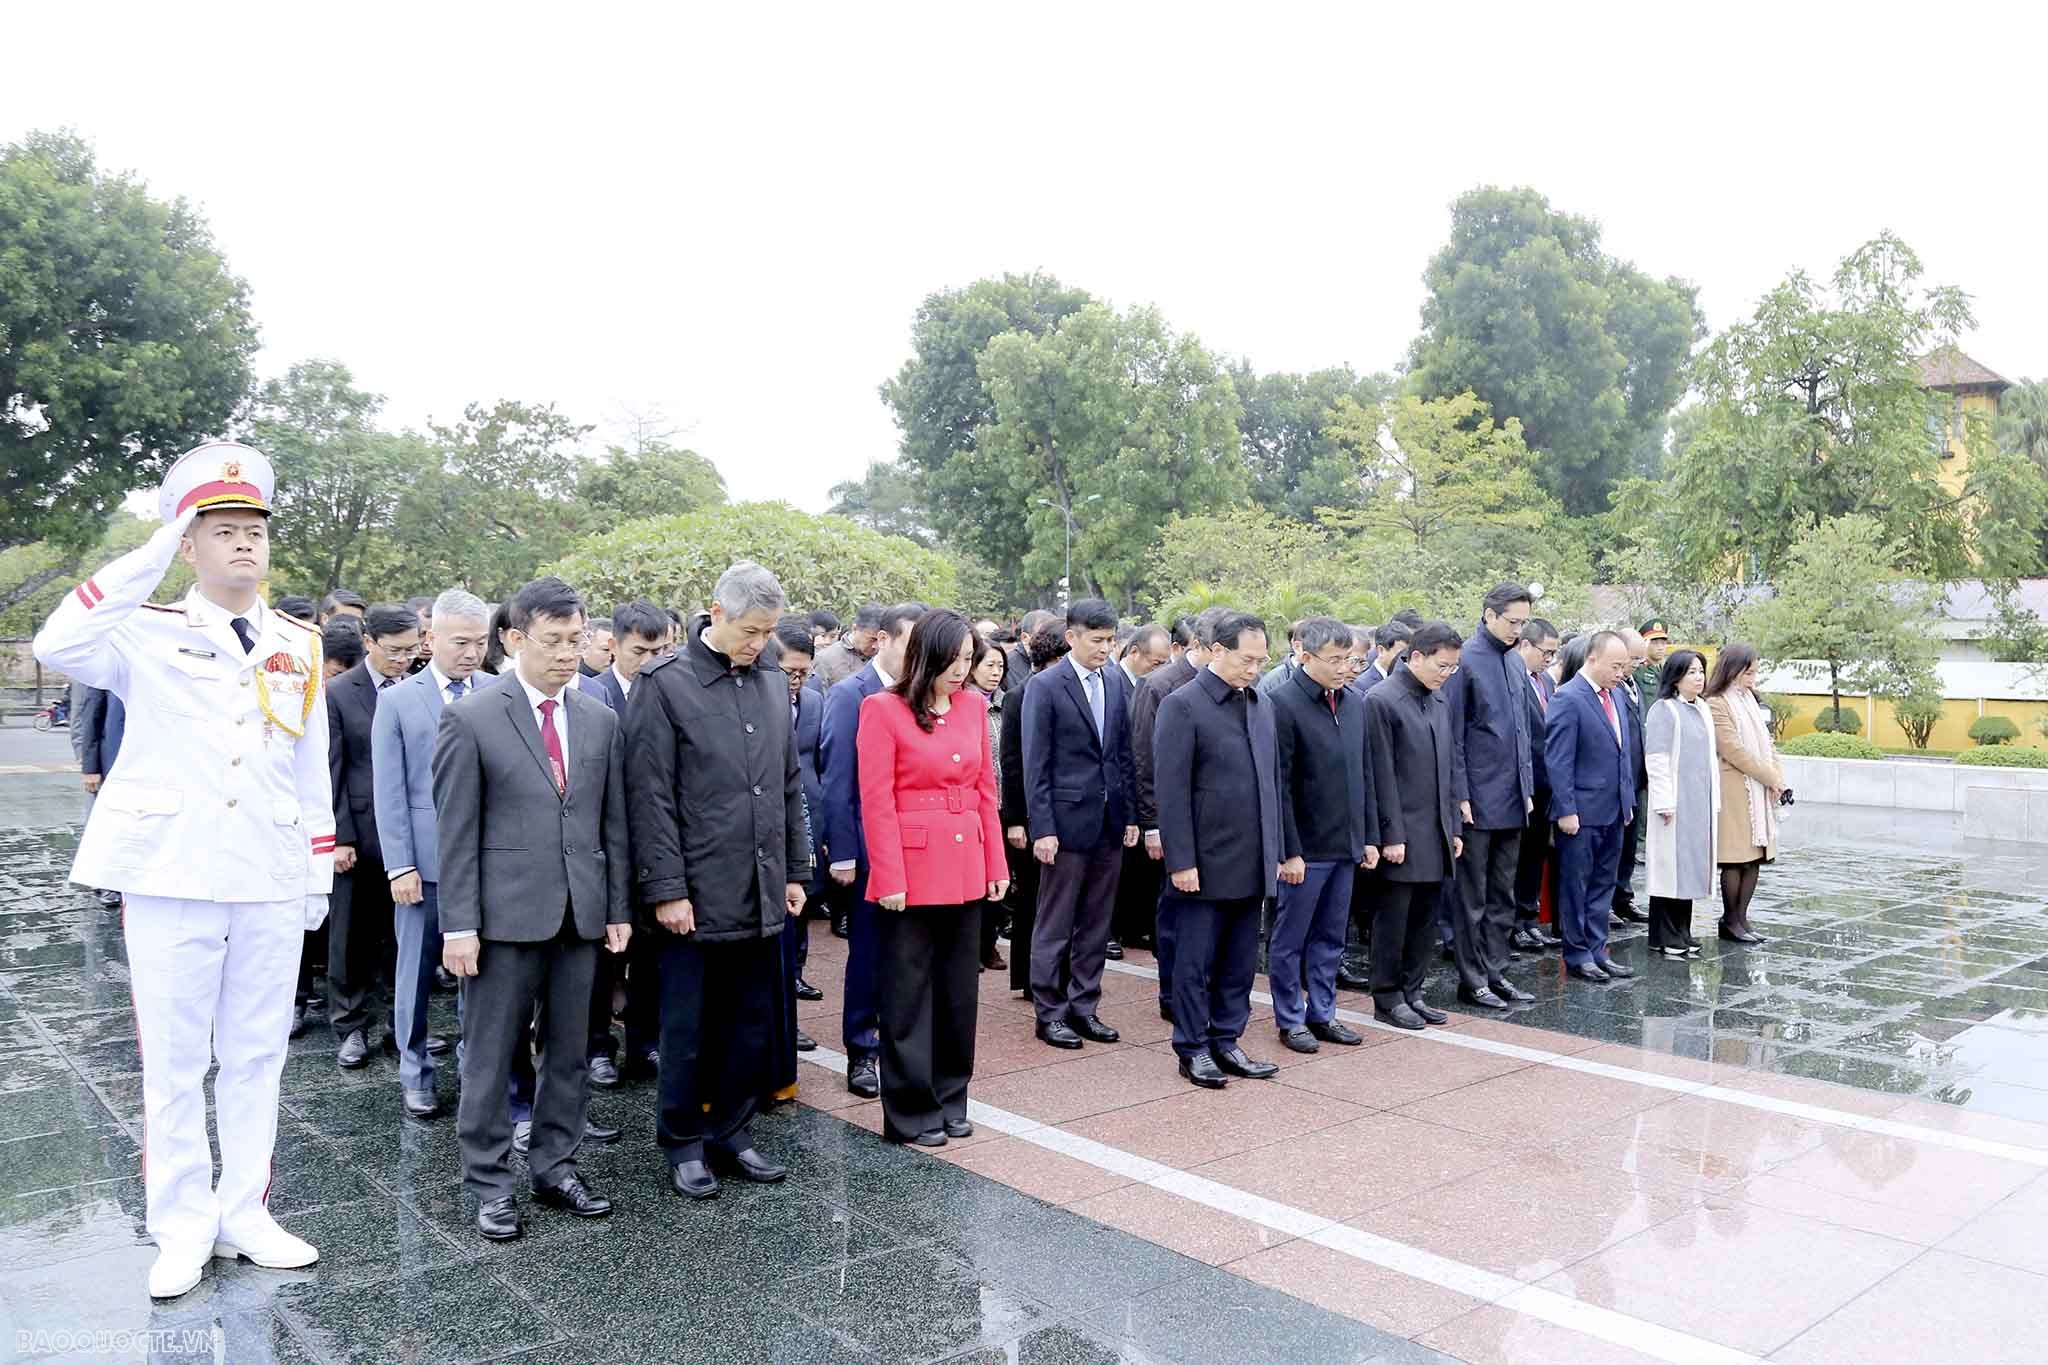 Bộ trưởng Bùi Thanh Sơn dẫn đầu đoàn Bộ Ngoại giao vào Lăng viếng Chủ tịch Hồ Chí Minh nhân dịp Hội nghị Ngoại giao 32